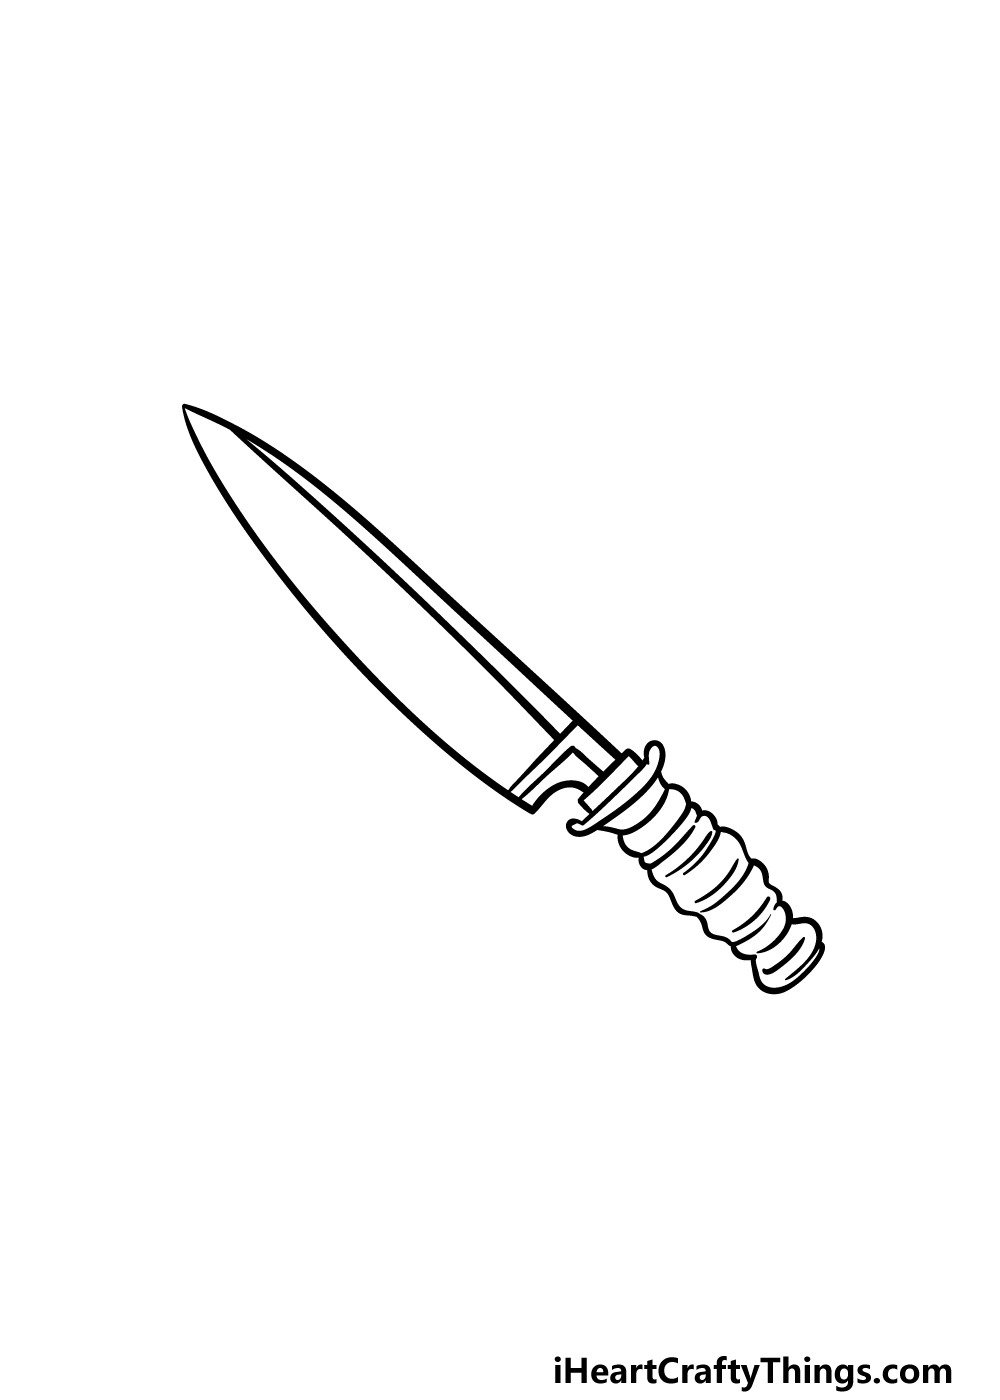 5 113 - Hướng dẫn cách vẽ con dao đơn giản với 6 bước cơ bản